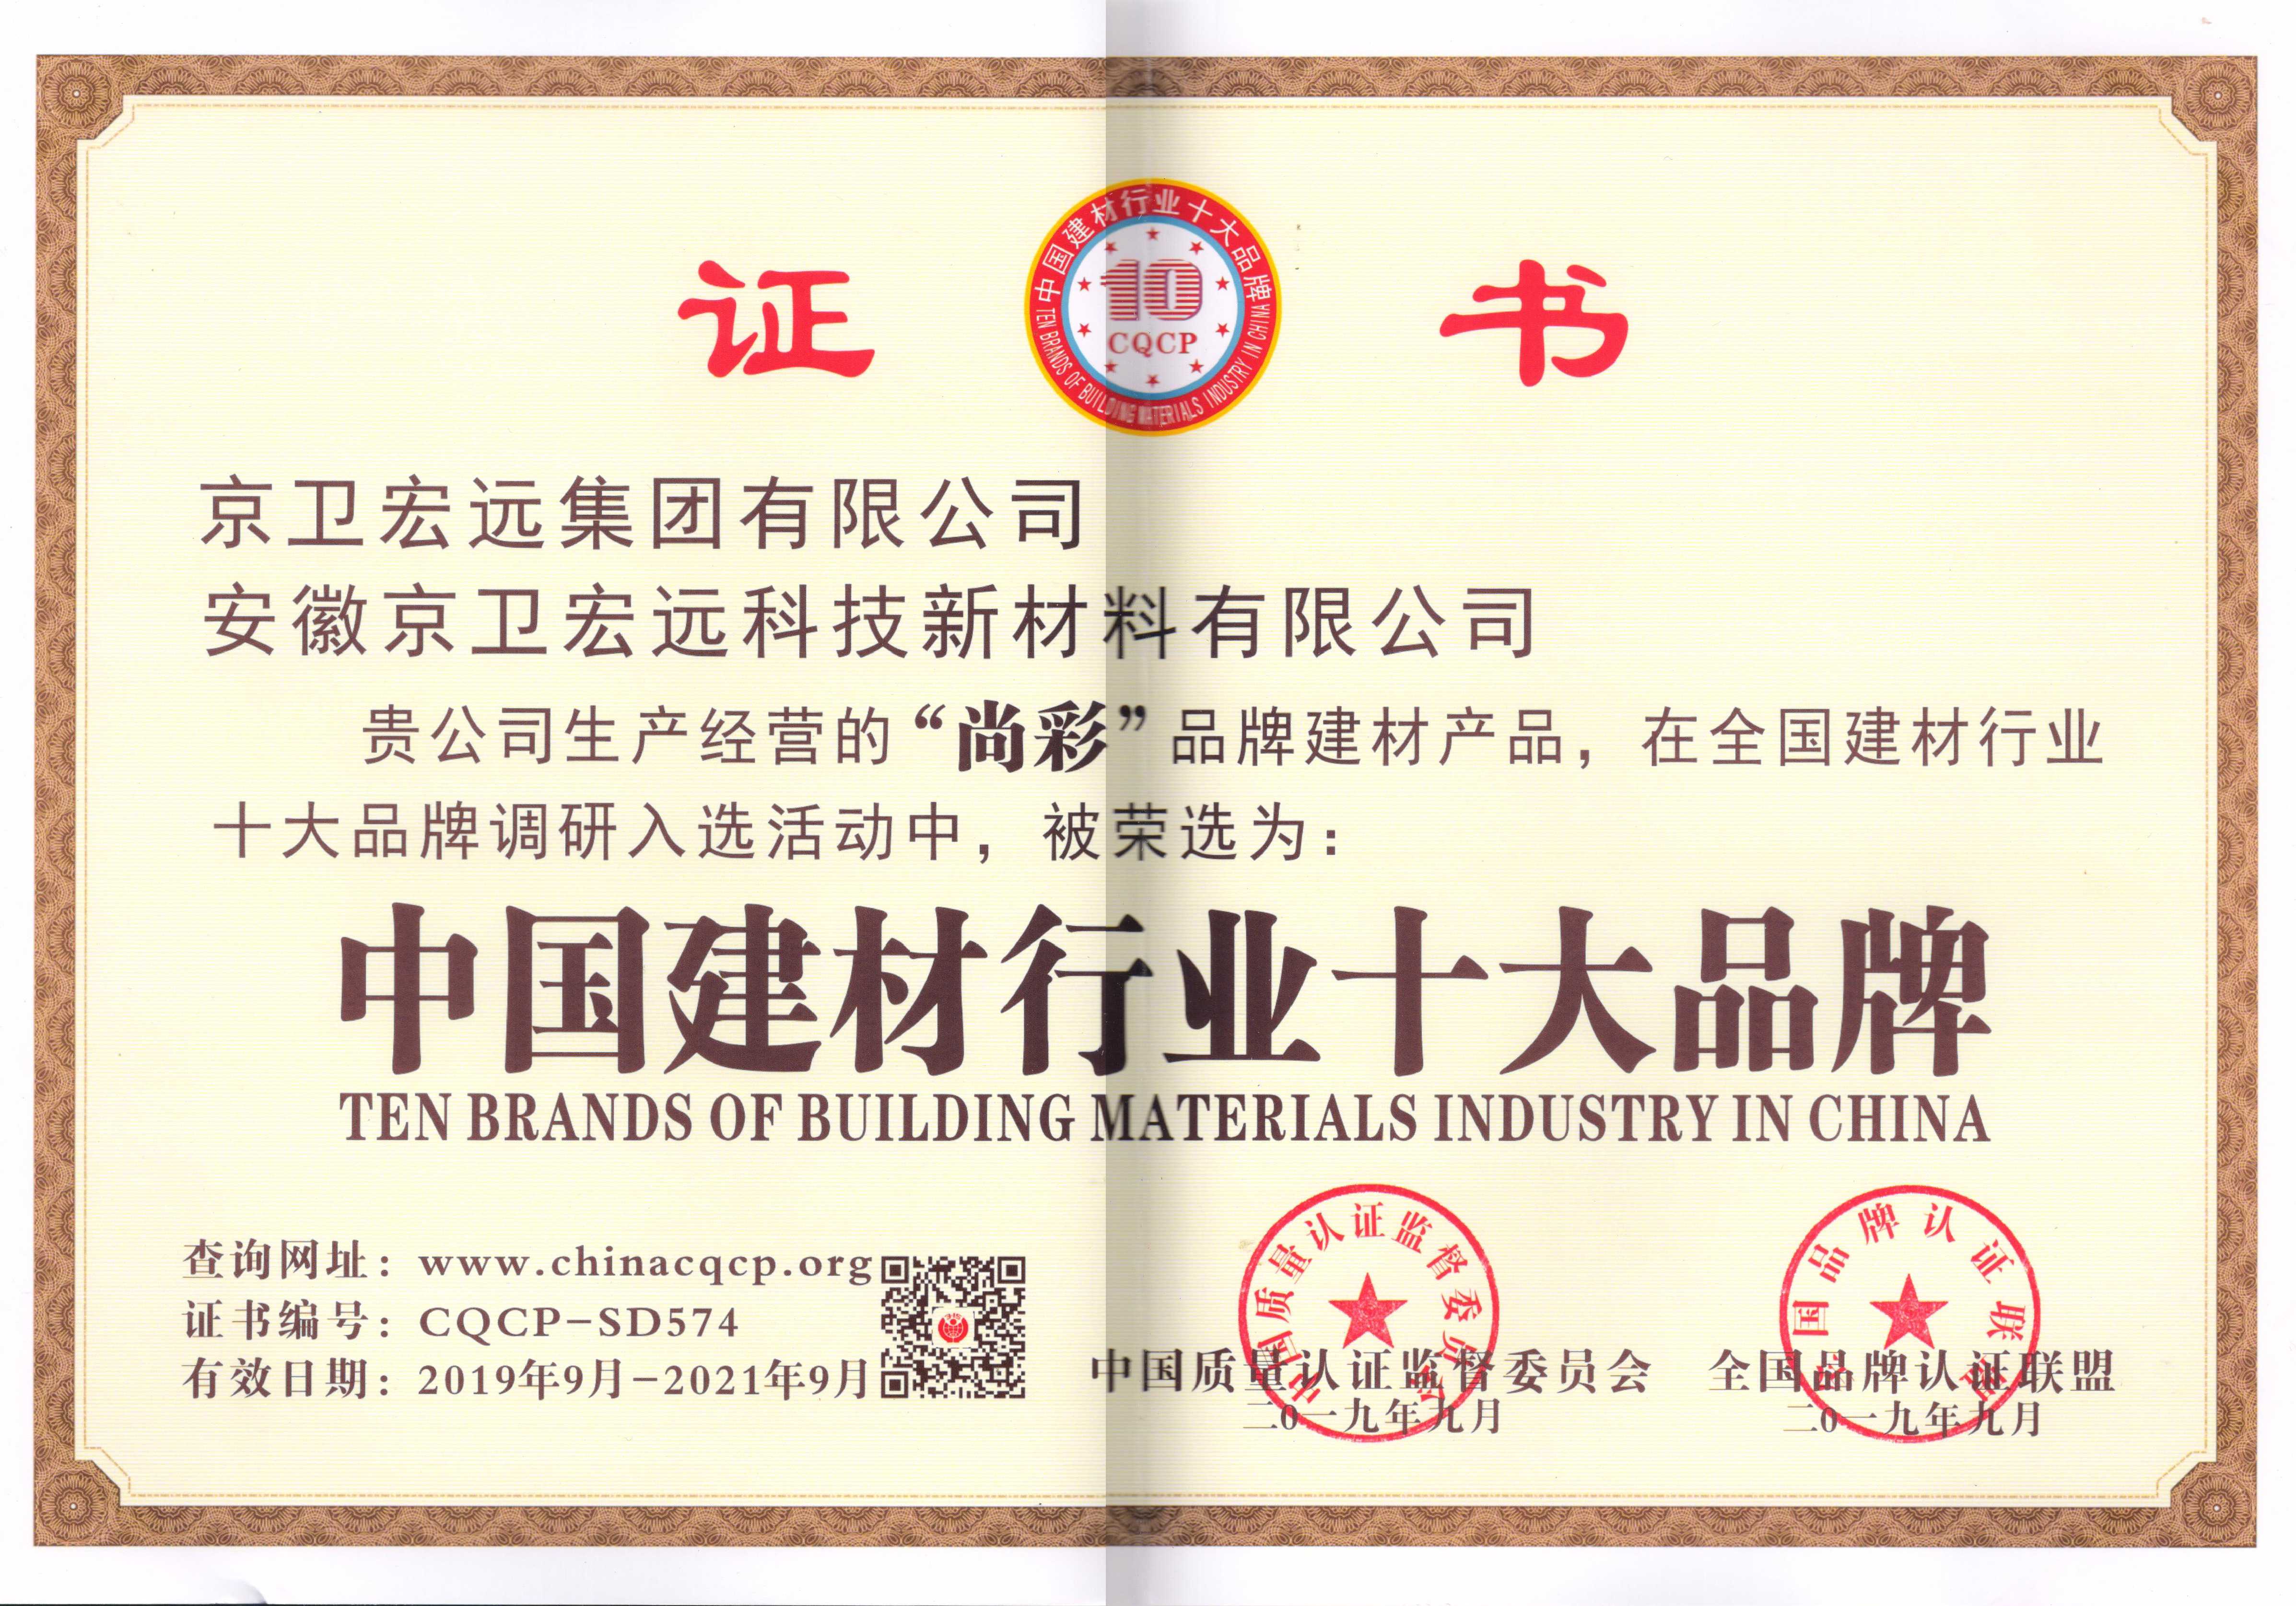 尚彩水漆中国建材行业十大品牌认证证书